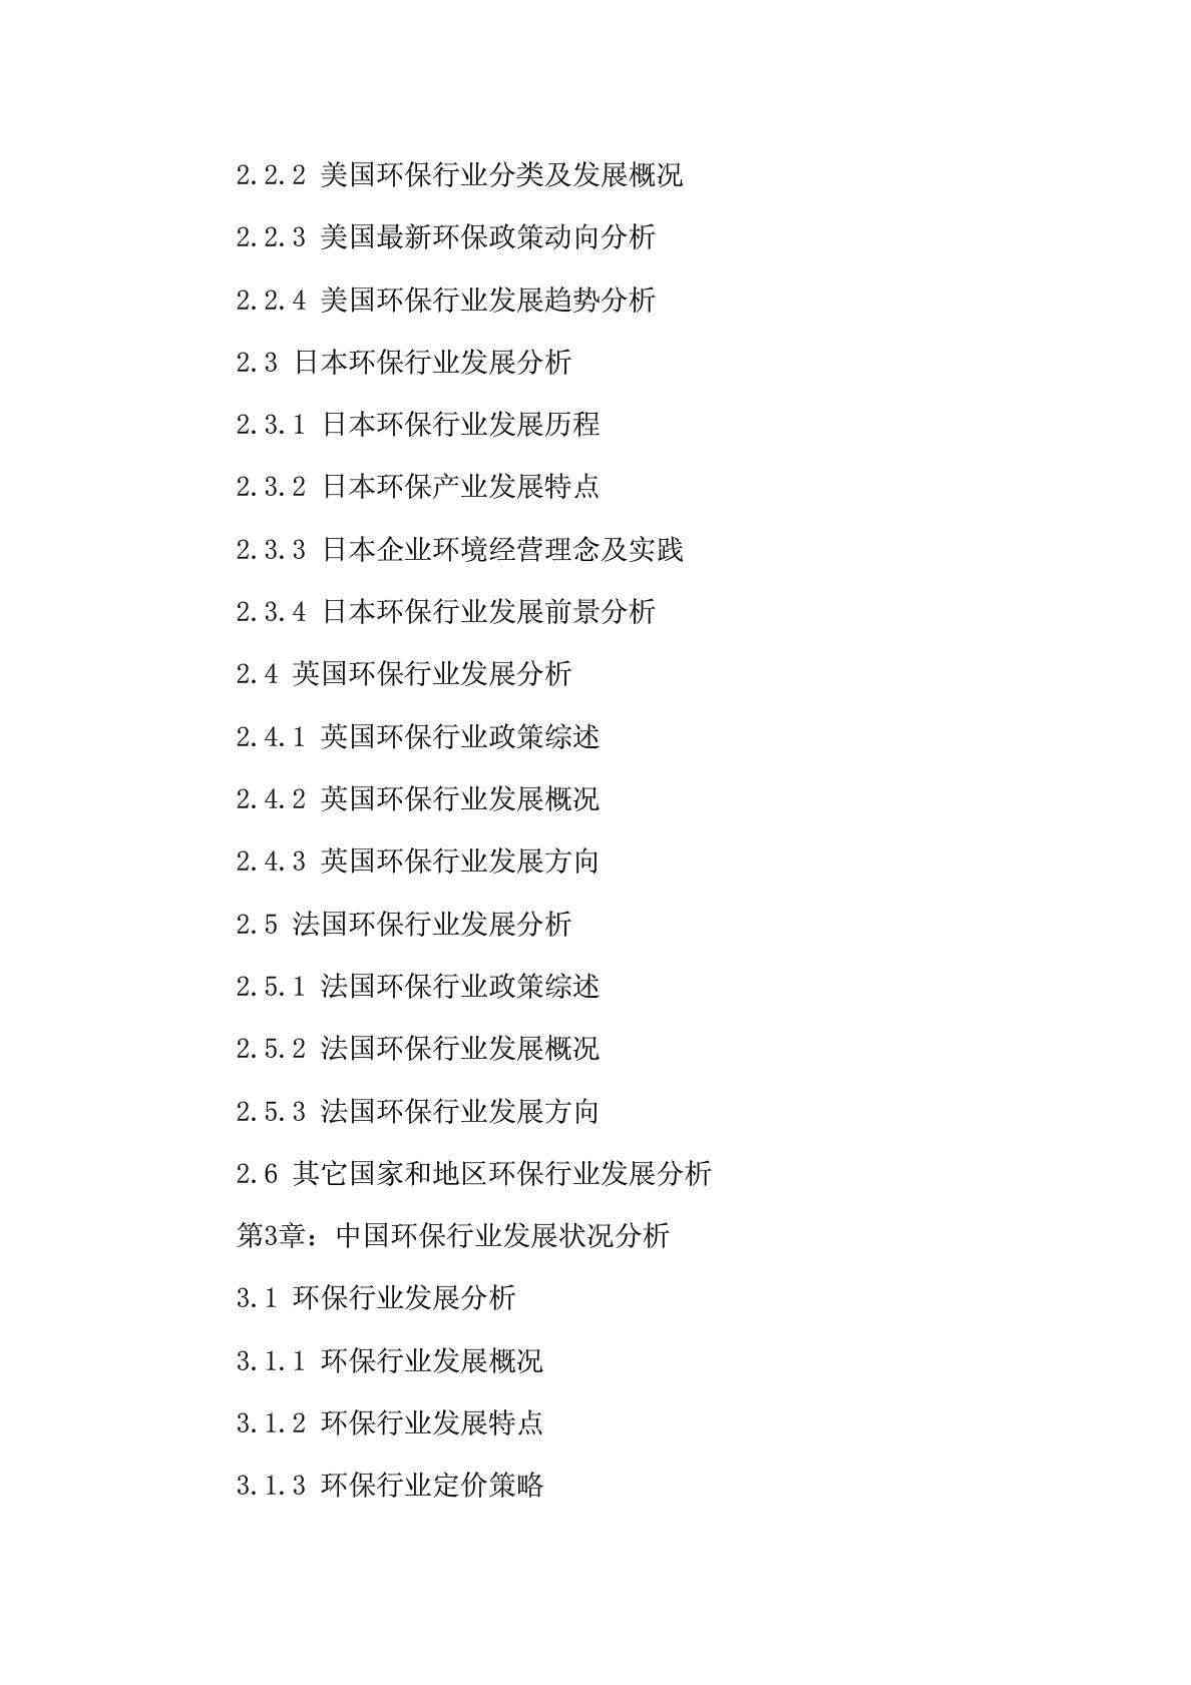 [优质文档]2013年中国环保行业细分市场(污水处理,泥土修复)调研...-图一